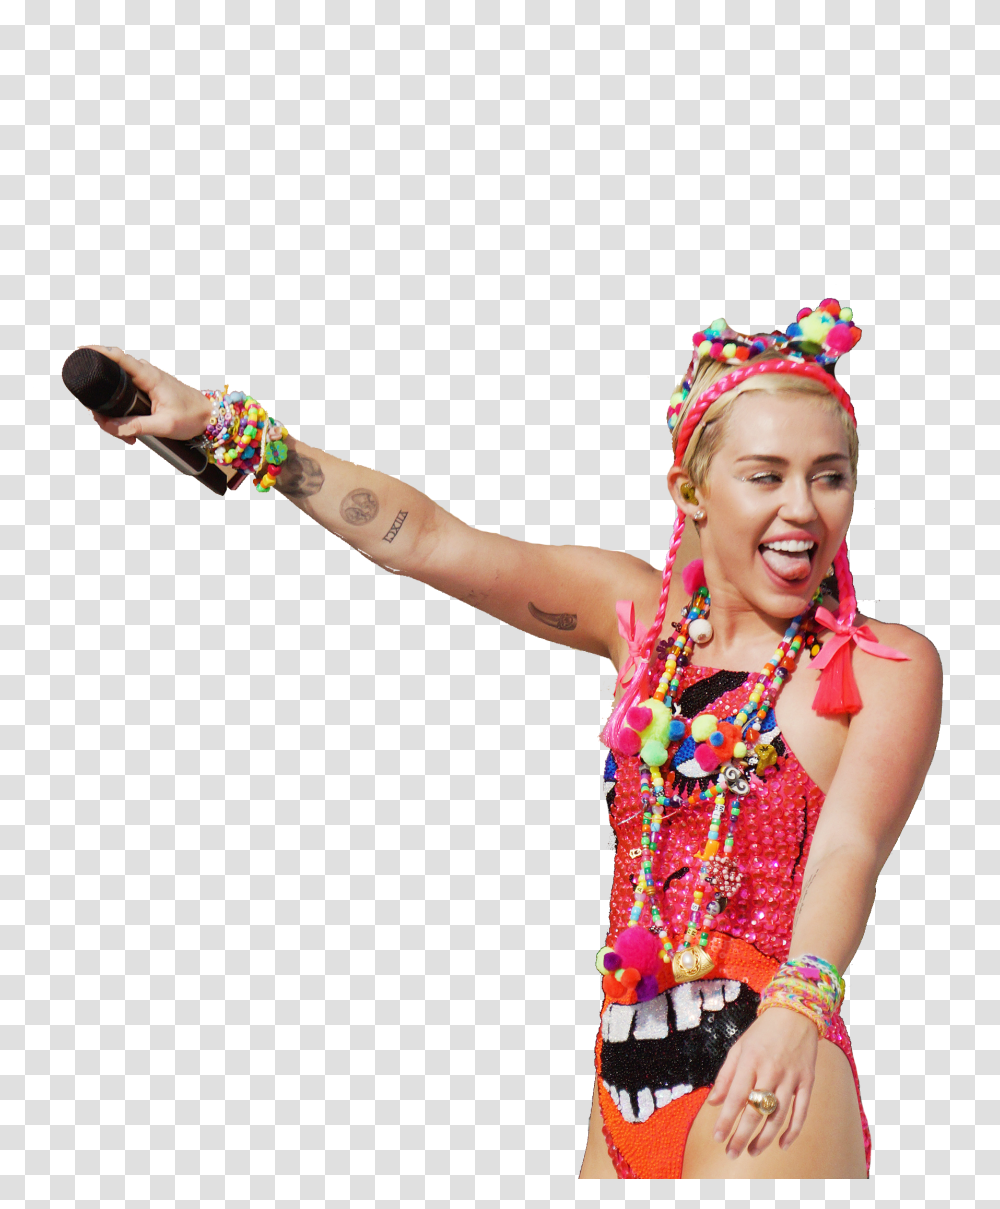 Nos De Dudas Miley Cyrus Revela Que Es, Person, Plant, Leisure Activities, Dance Pose Transparent Png